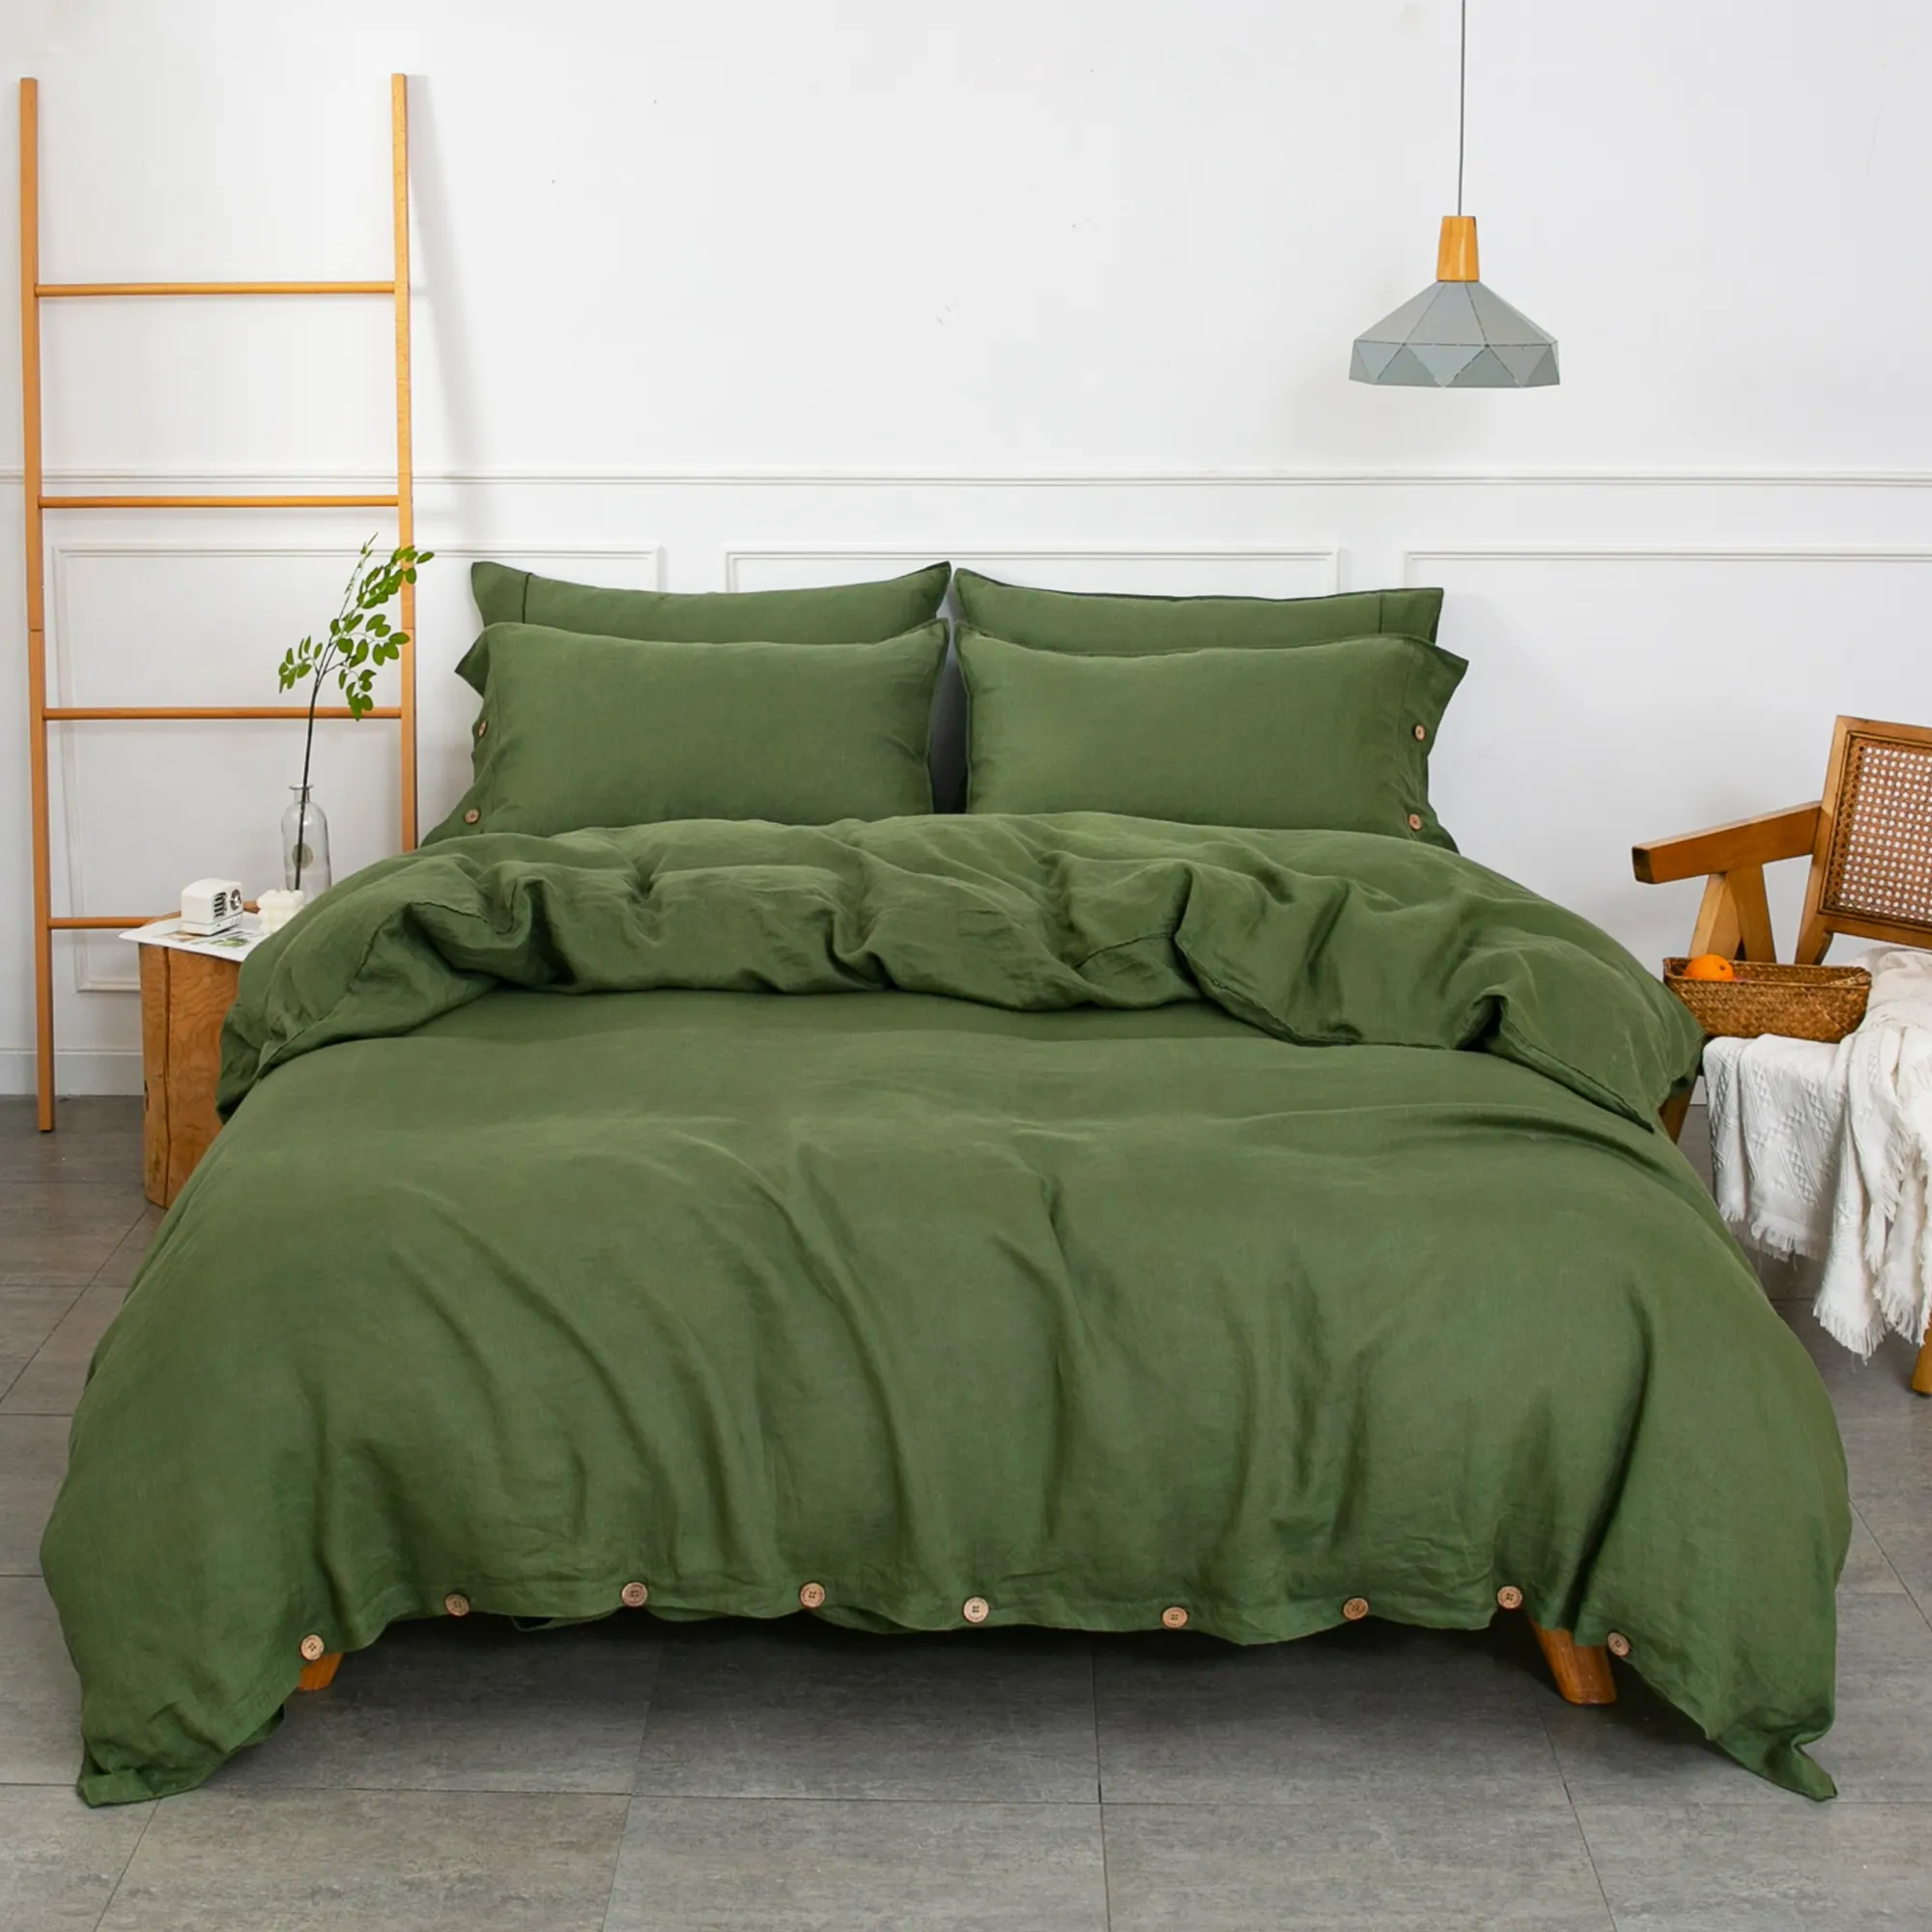 Nouveaux ensembles de literie 7 pièces Collections chambre à coucher de luxe couette draps draps de lit en coton ensemble de literie